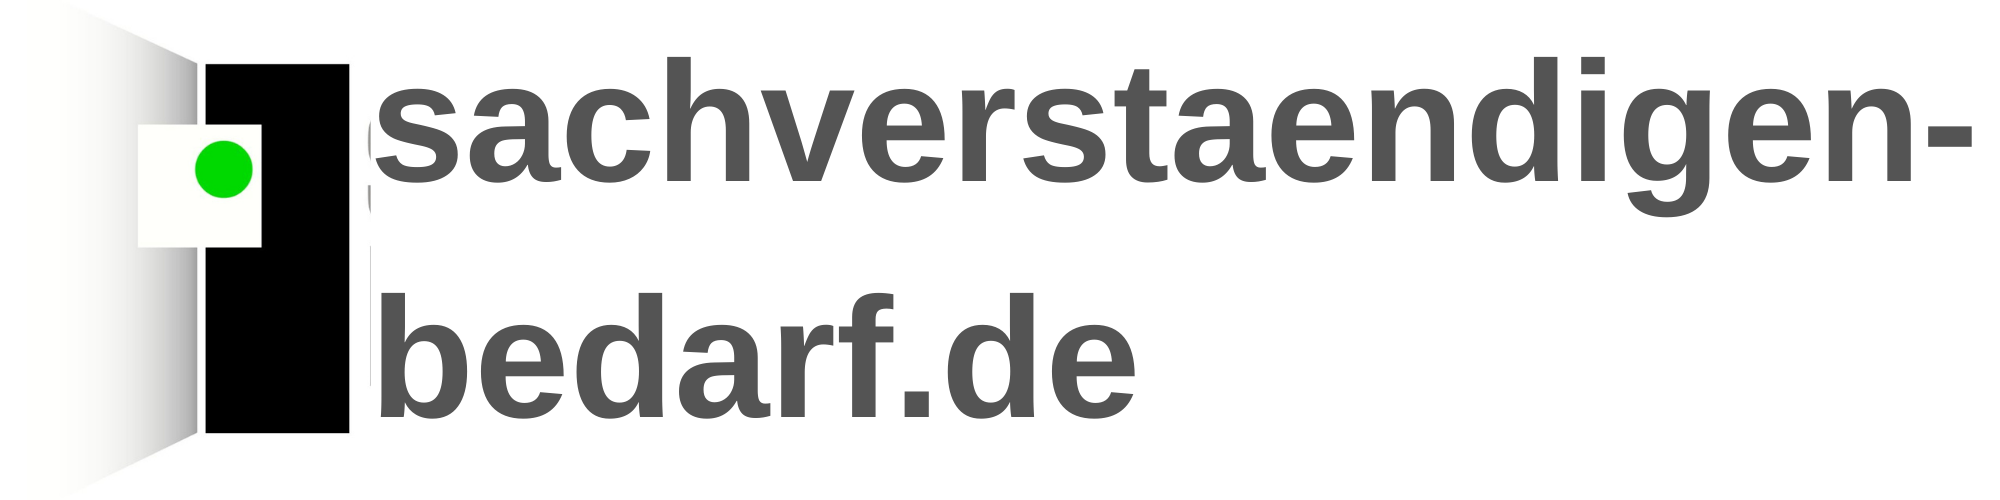 sachverstaendigen-bedarf.de-Logo